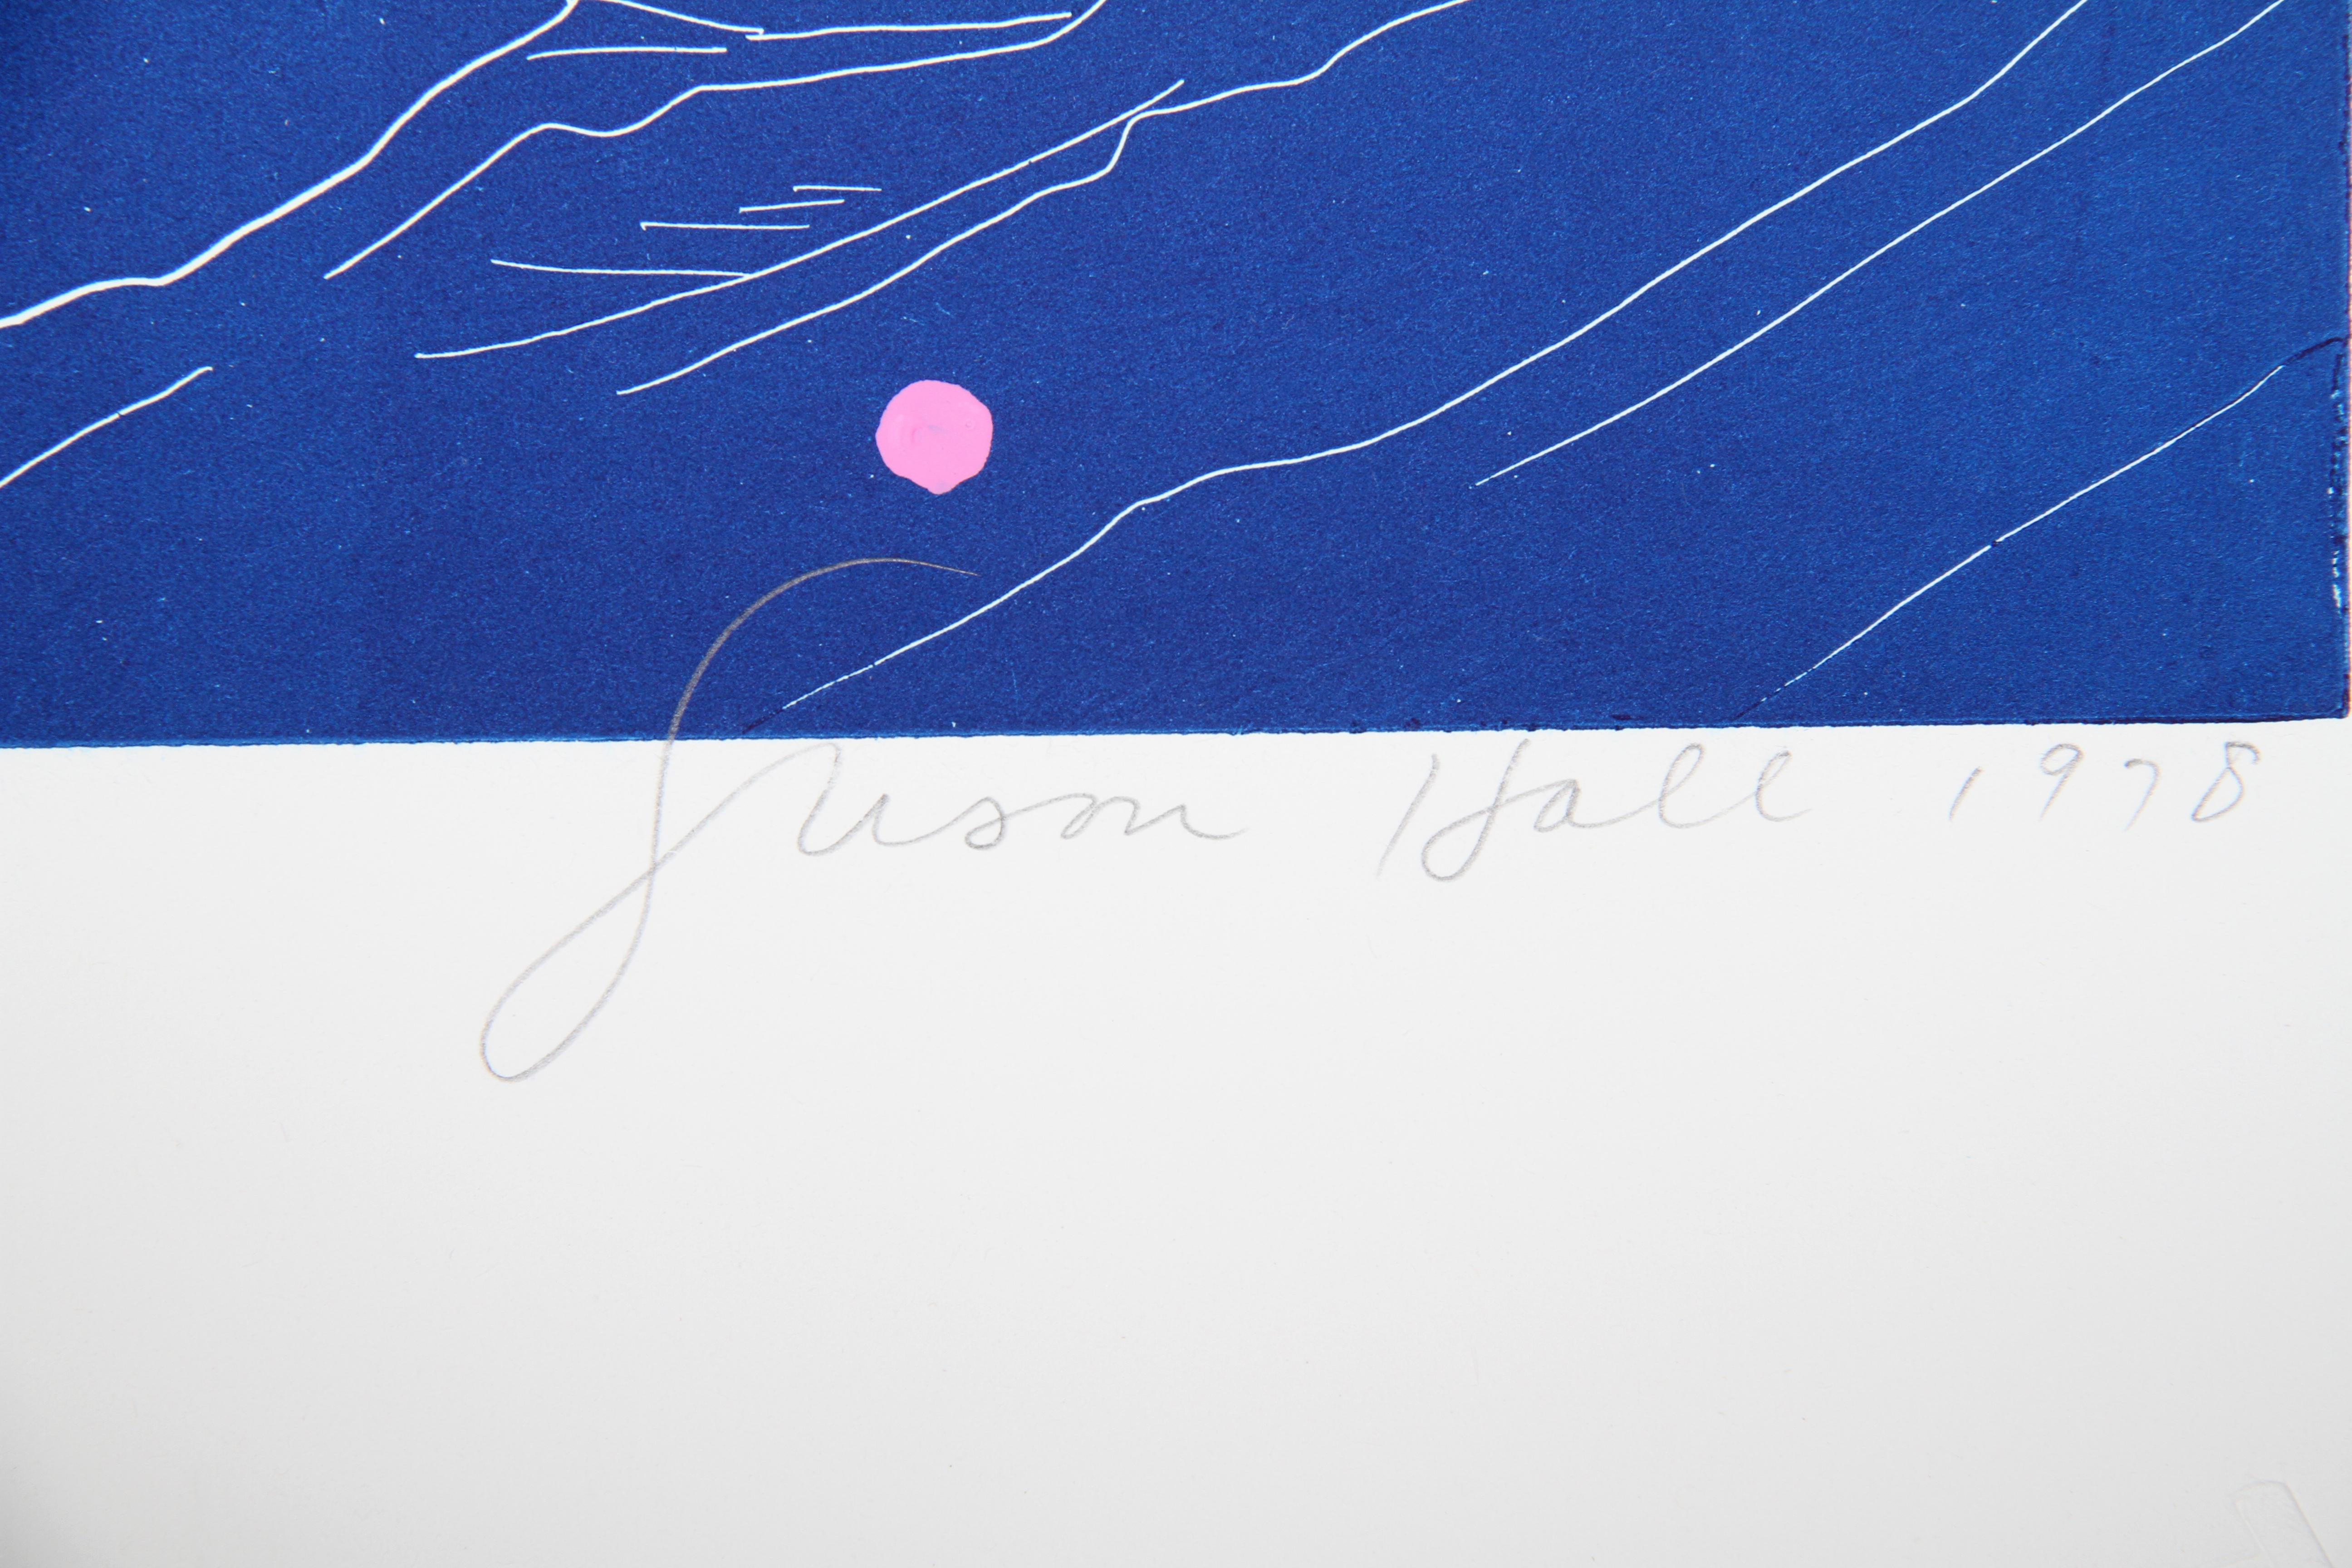 Wüstenstrümpfe
Susan Hall, Amerikanerin (1943)
Datum: 1978
Radierung mit Aquatinta, mit Bleistift signiert und nummeriert
Auflage von 78
Bildgröße: 21,5 x 28 Zoll
Größe: 28 x 35 Zoll (71,12 x 88,9 cm)